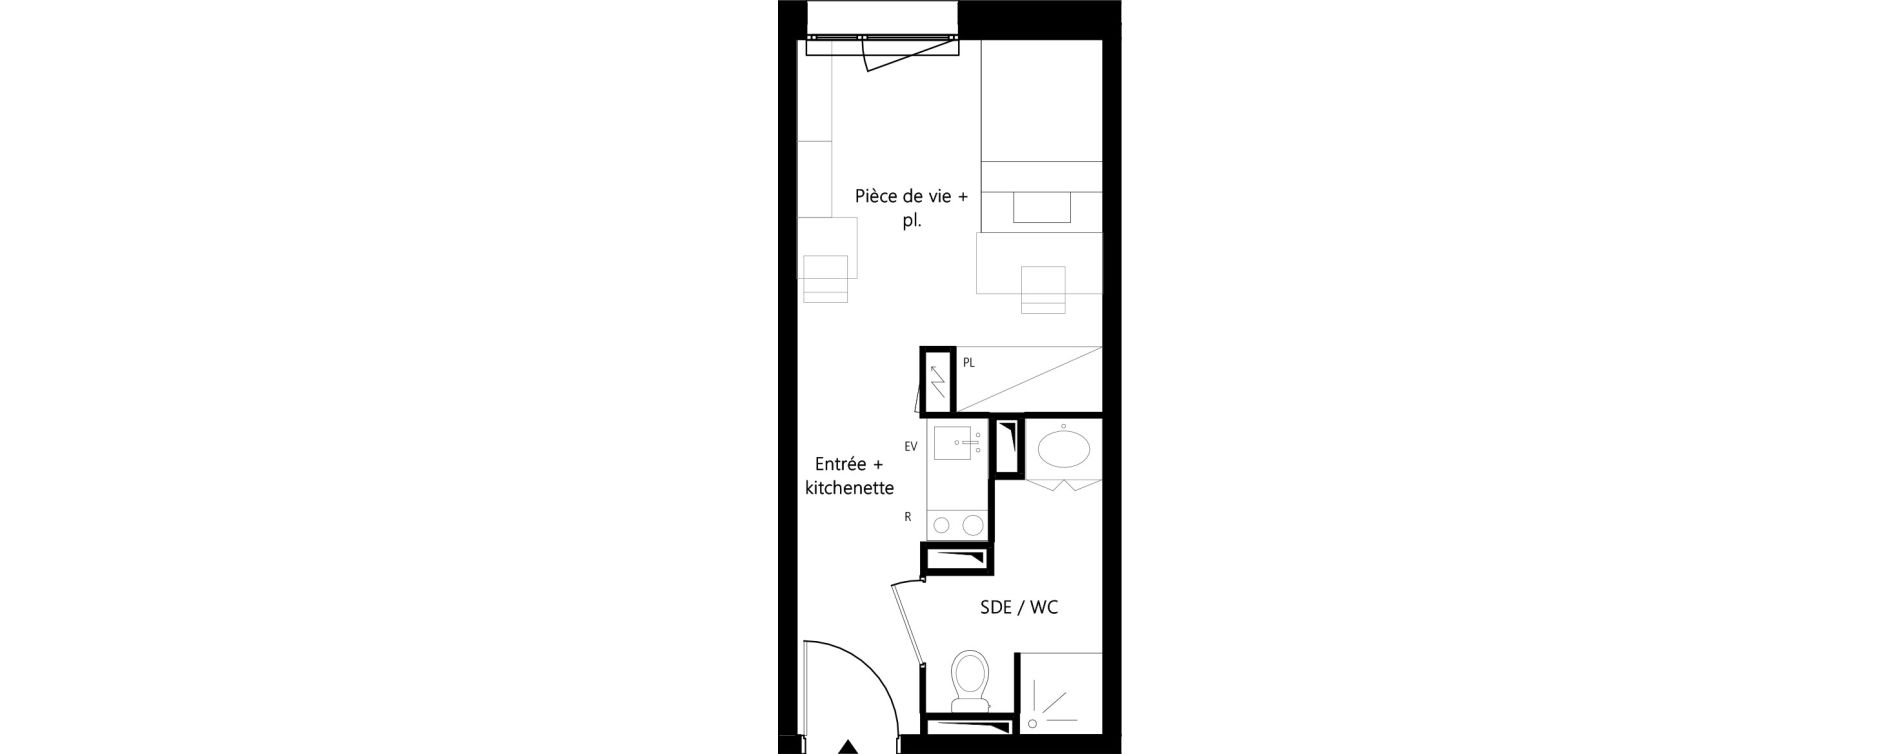 Appartement T1 meubl&eacute; de 19,53 m2 &agrave; Montauban Villebourbon - gare